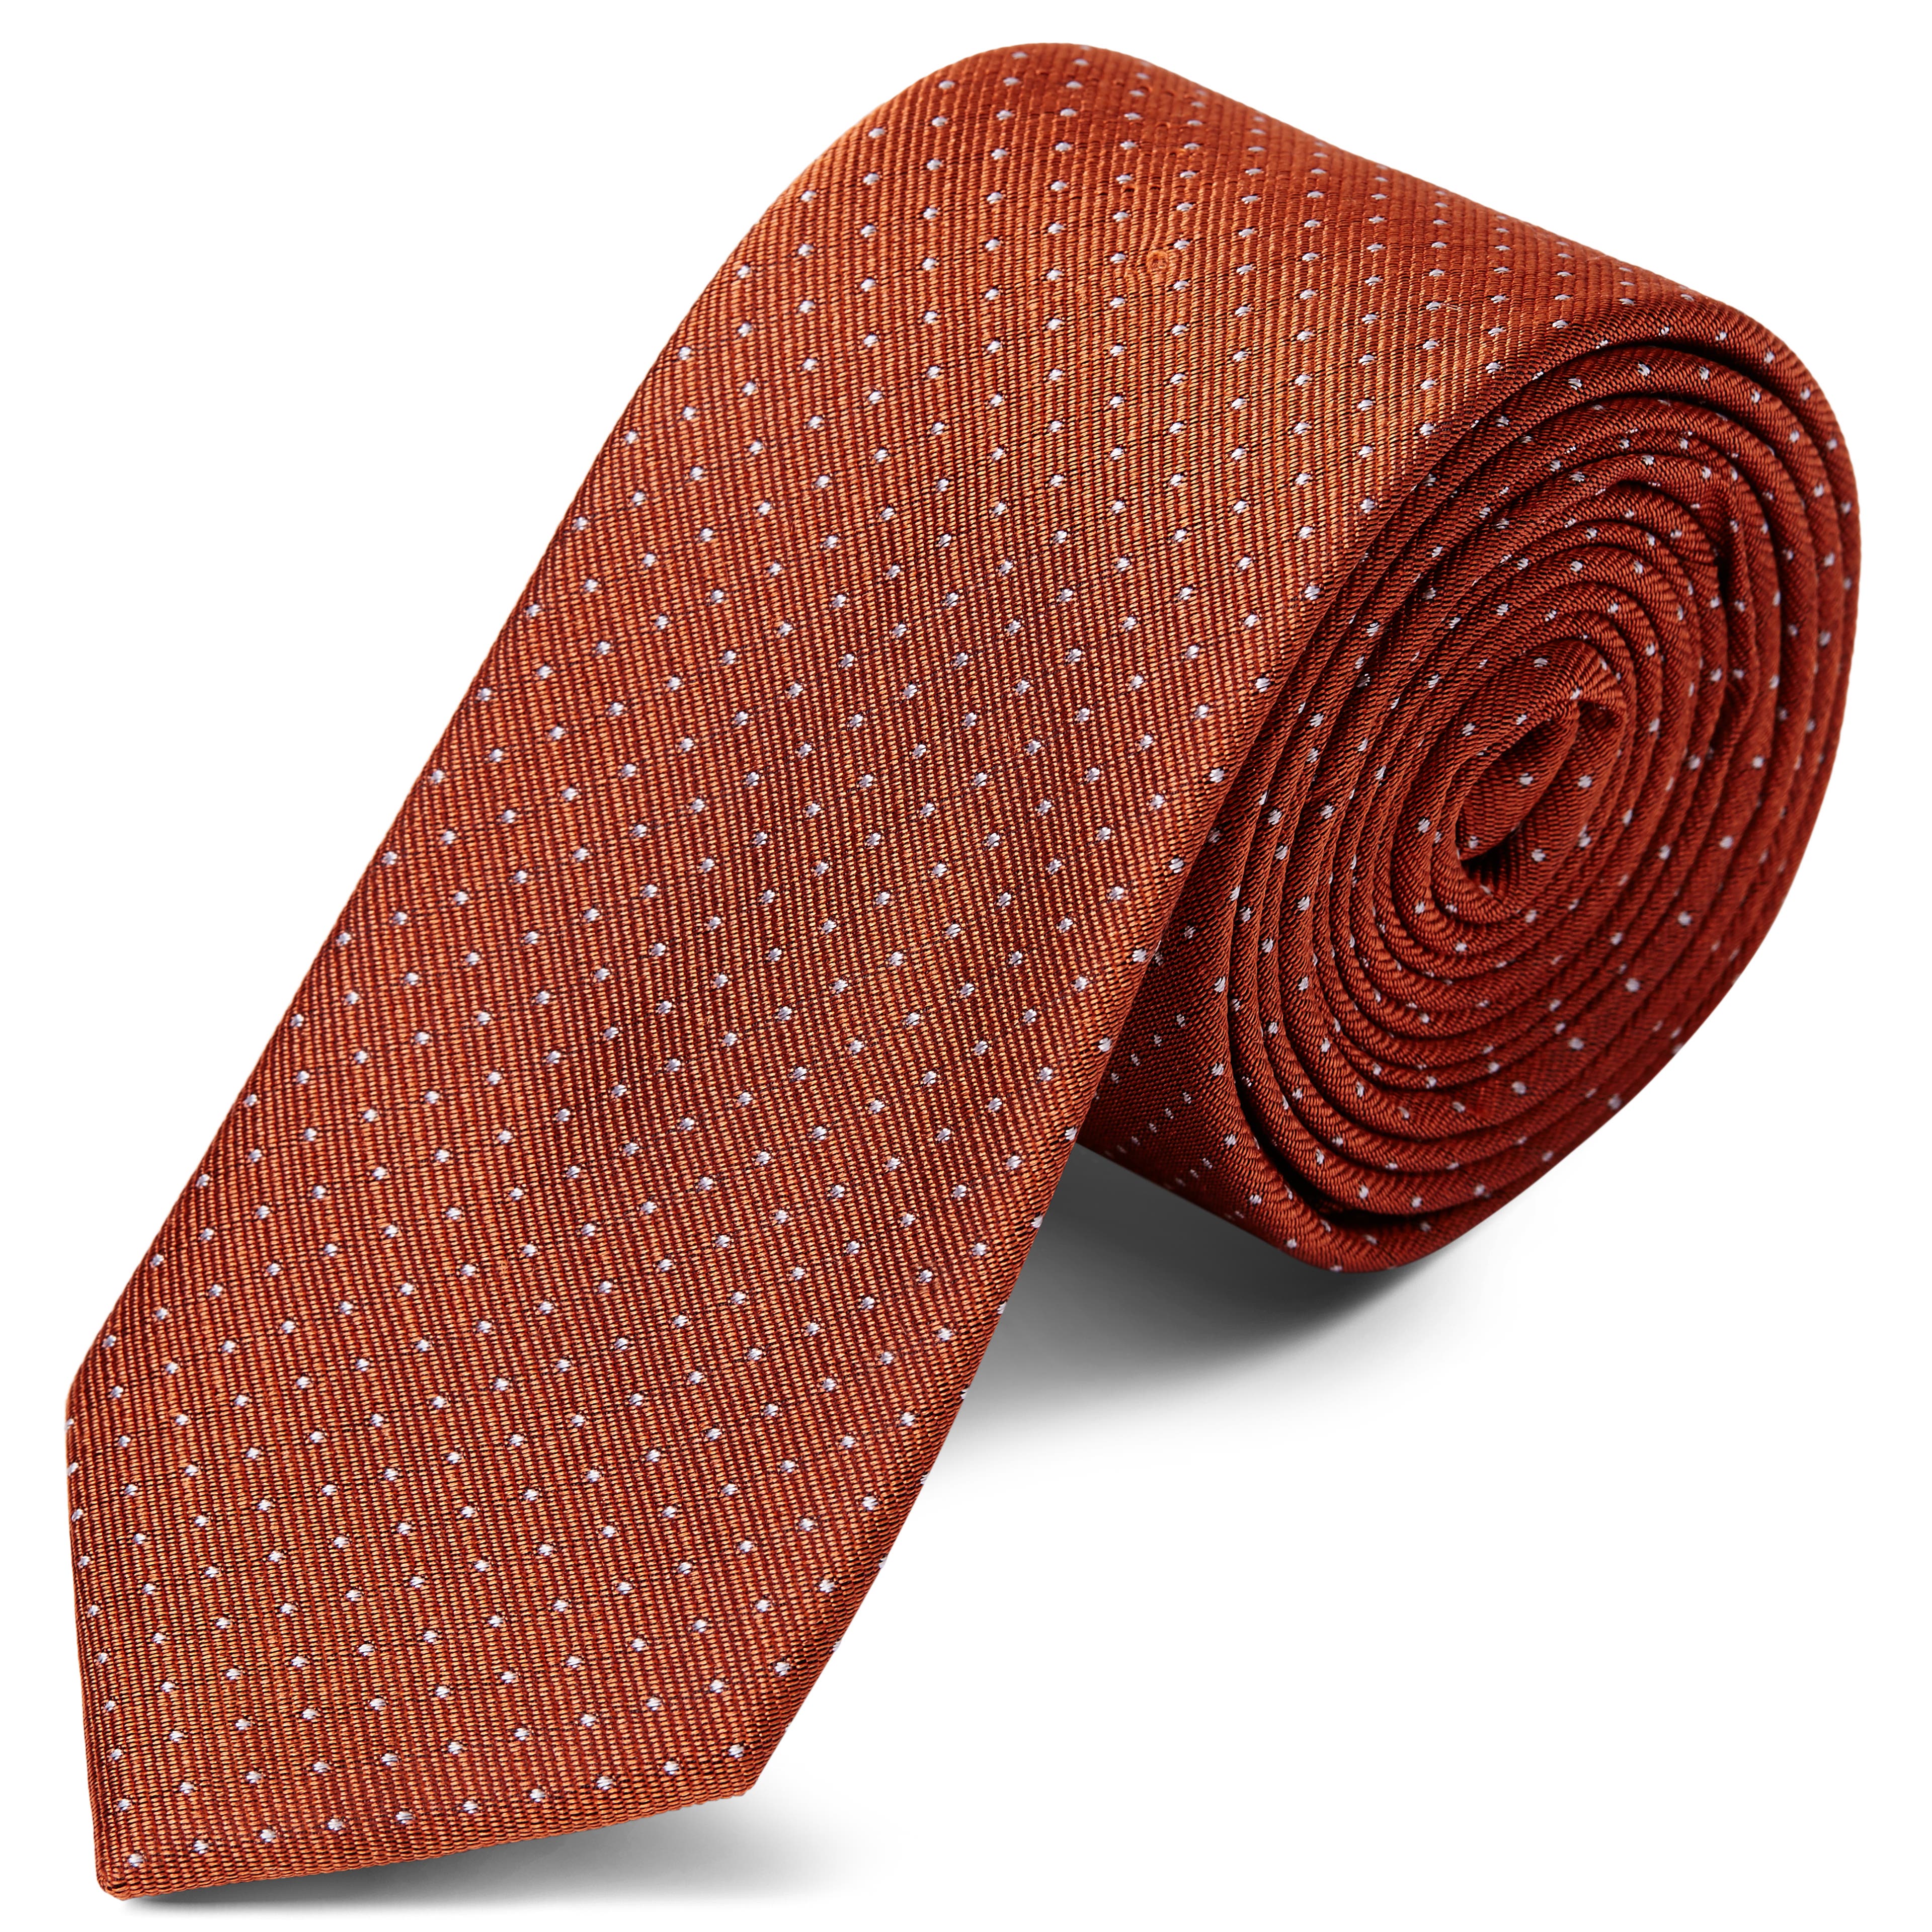 Керемиденокафява копринена вратовръзка на точки 6 см